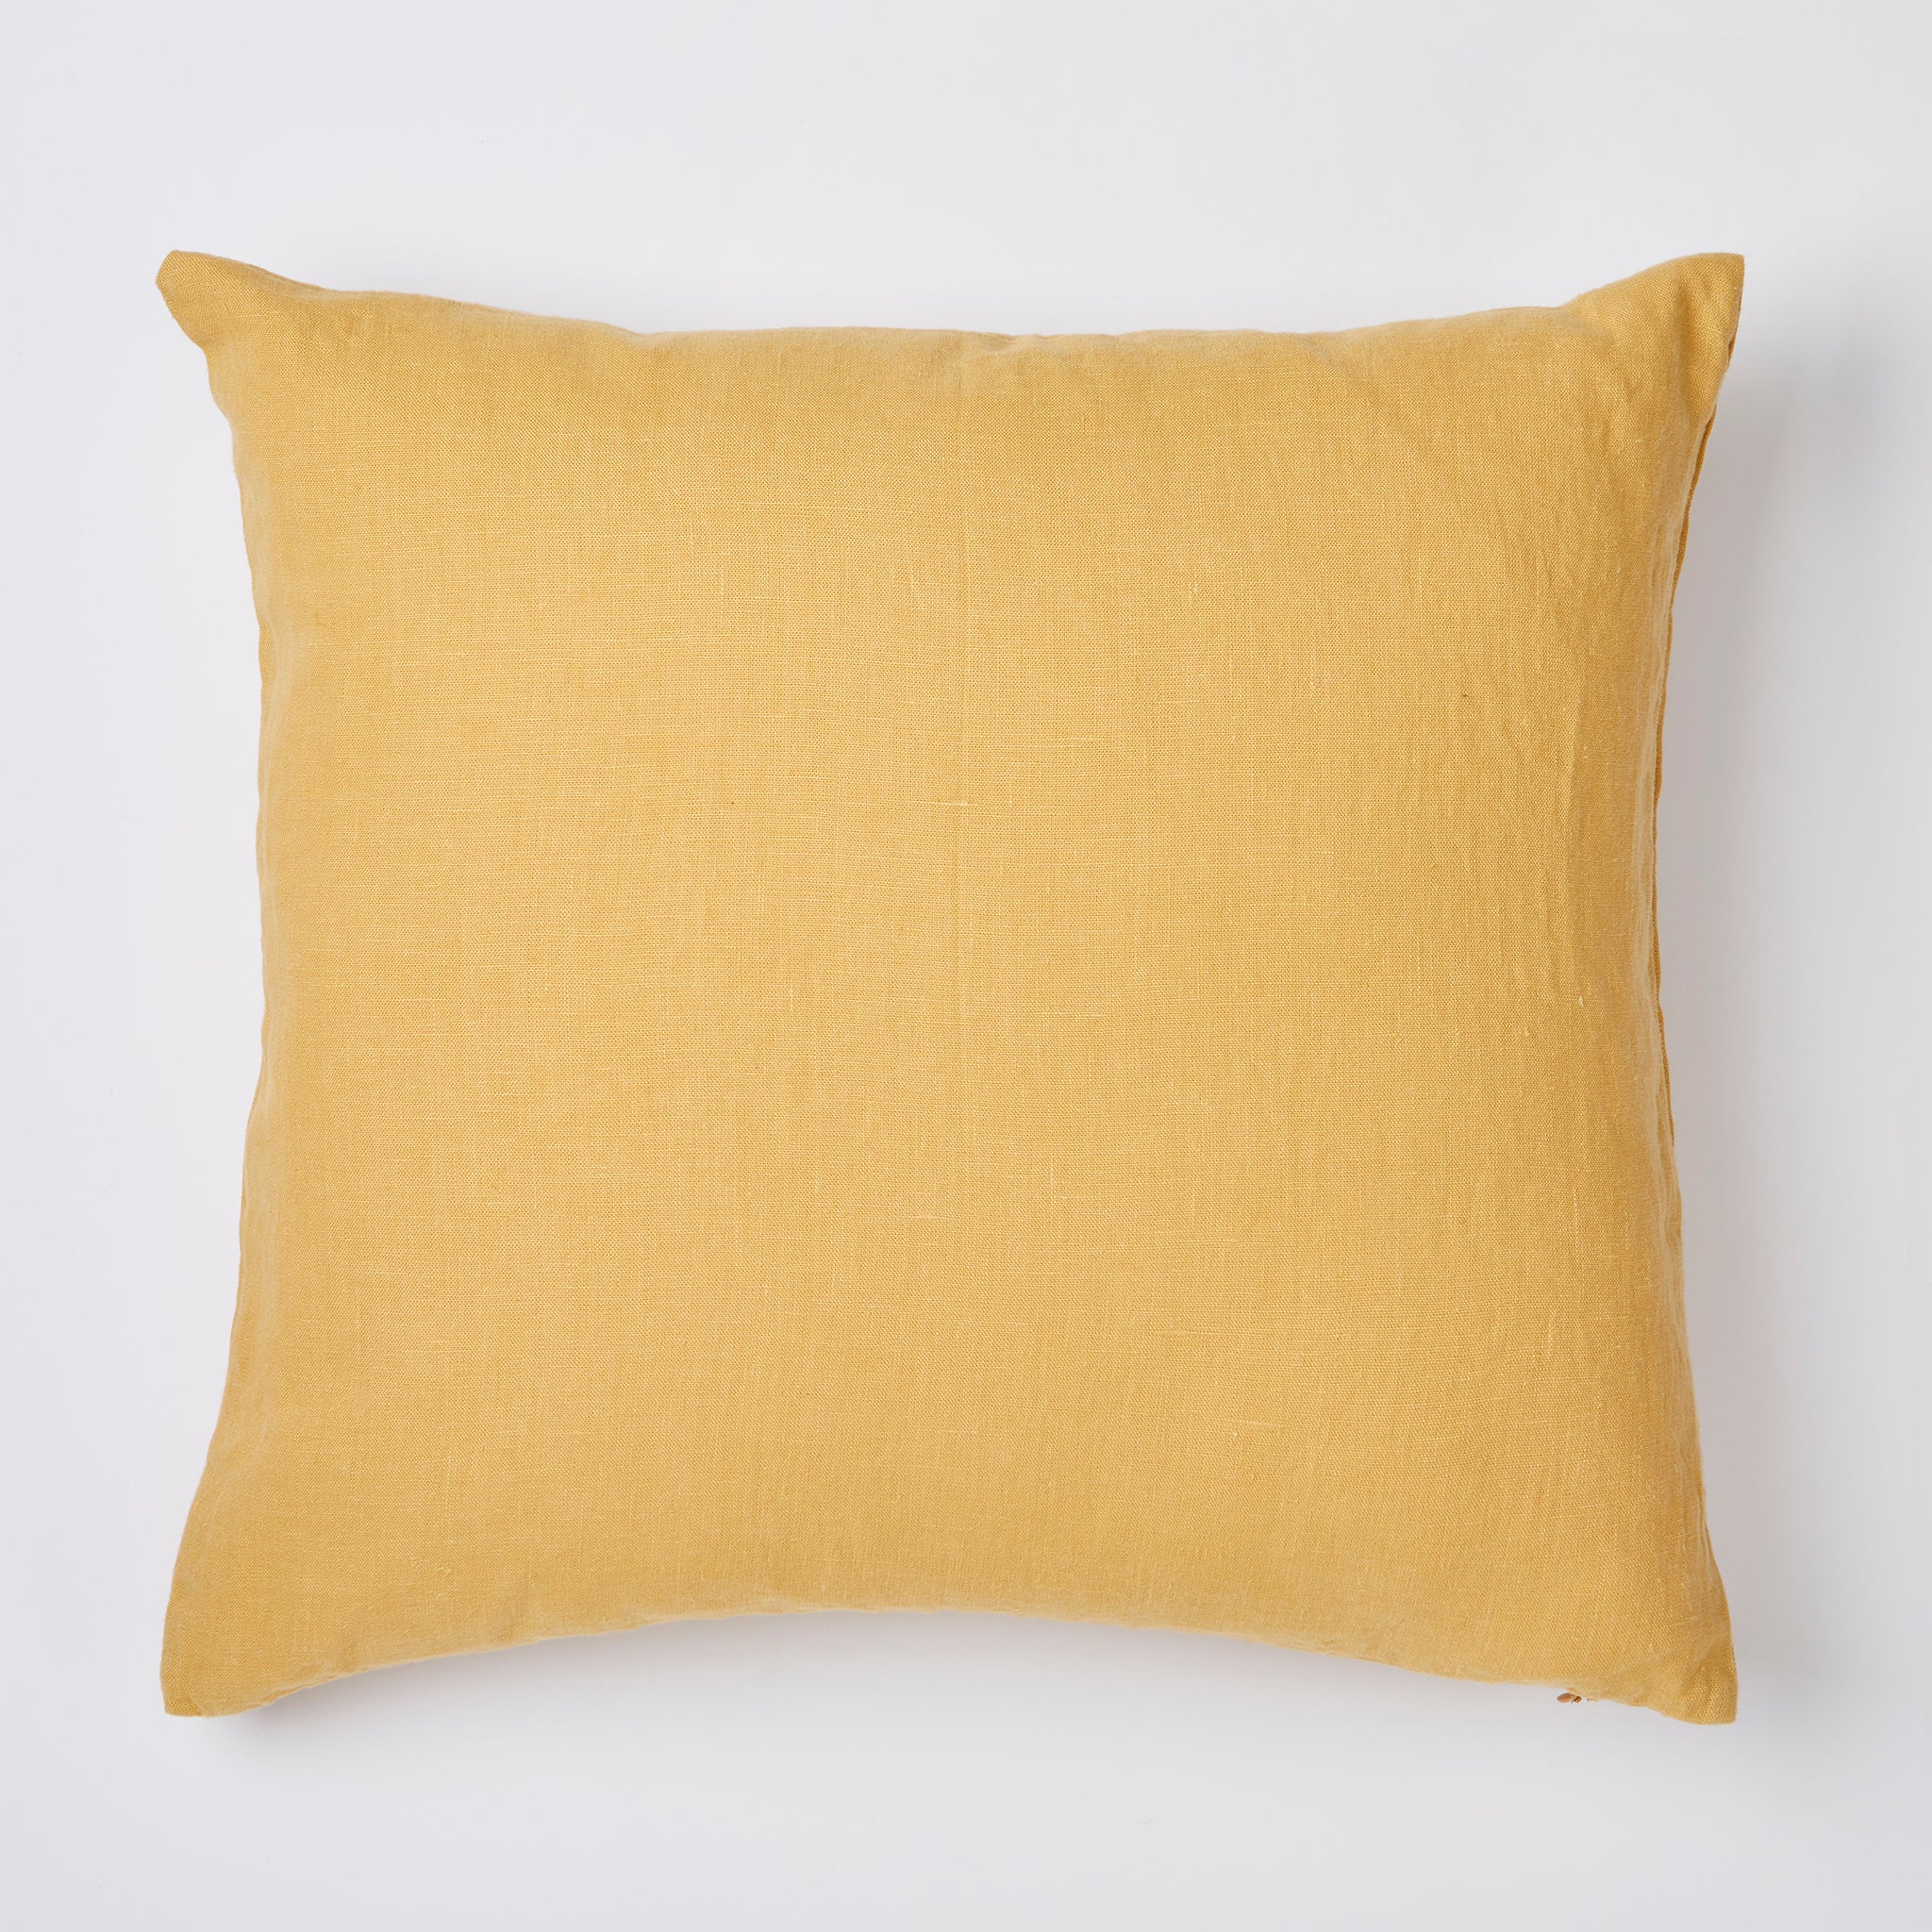 Linen pillow in honey yellow